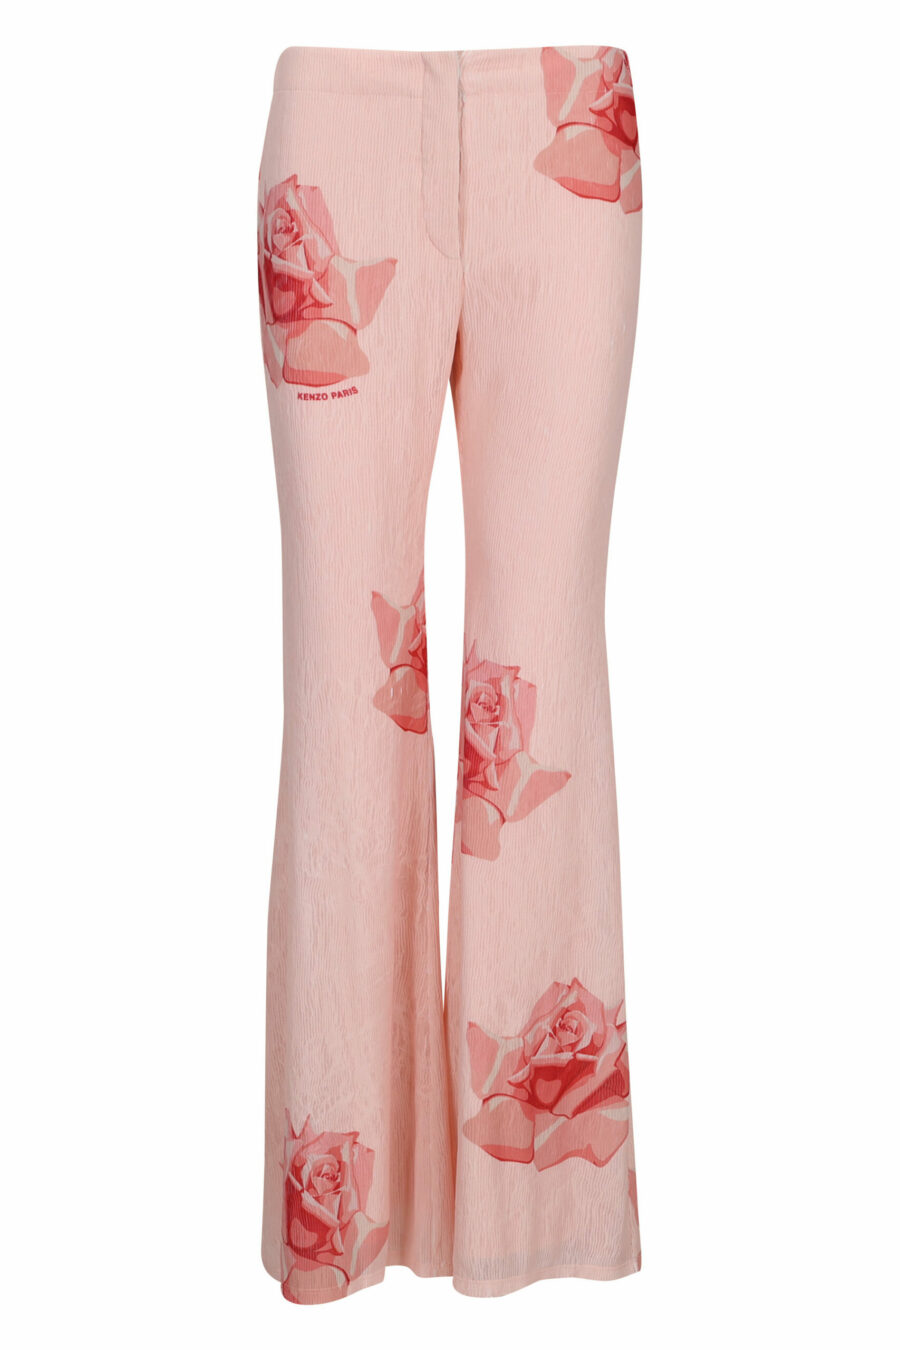 Pantalón rosa con estampado "kenzo rose" - 3612230630246 scaled